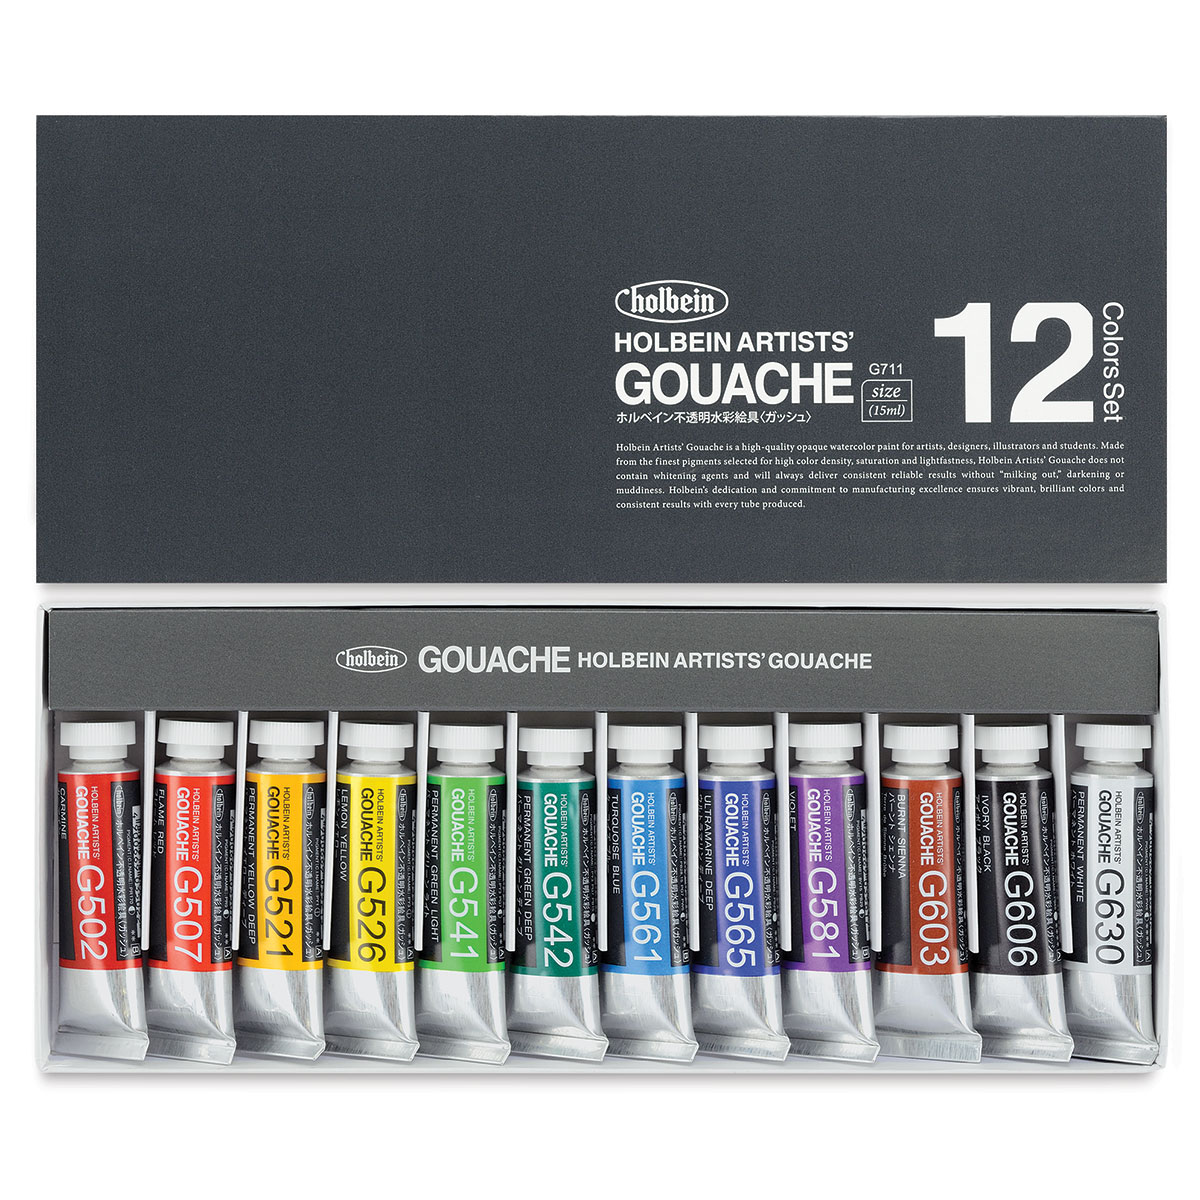 Artist's Loft Necessities Gouache Paint Sets 12 Colors and 25 pcs